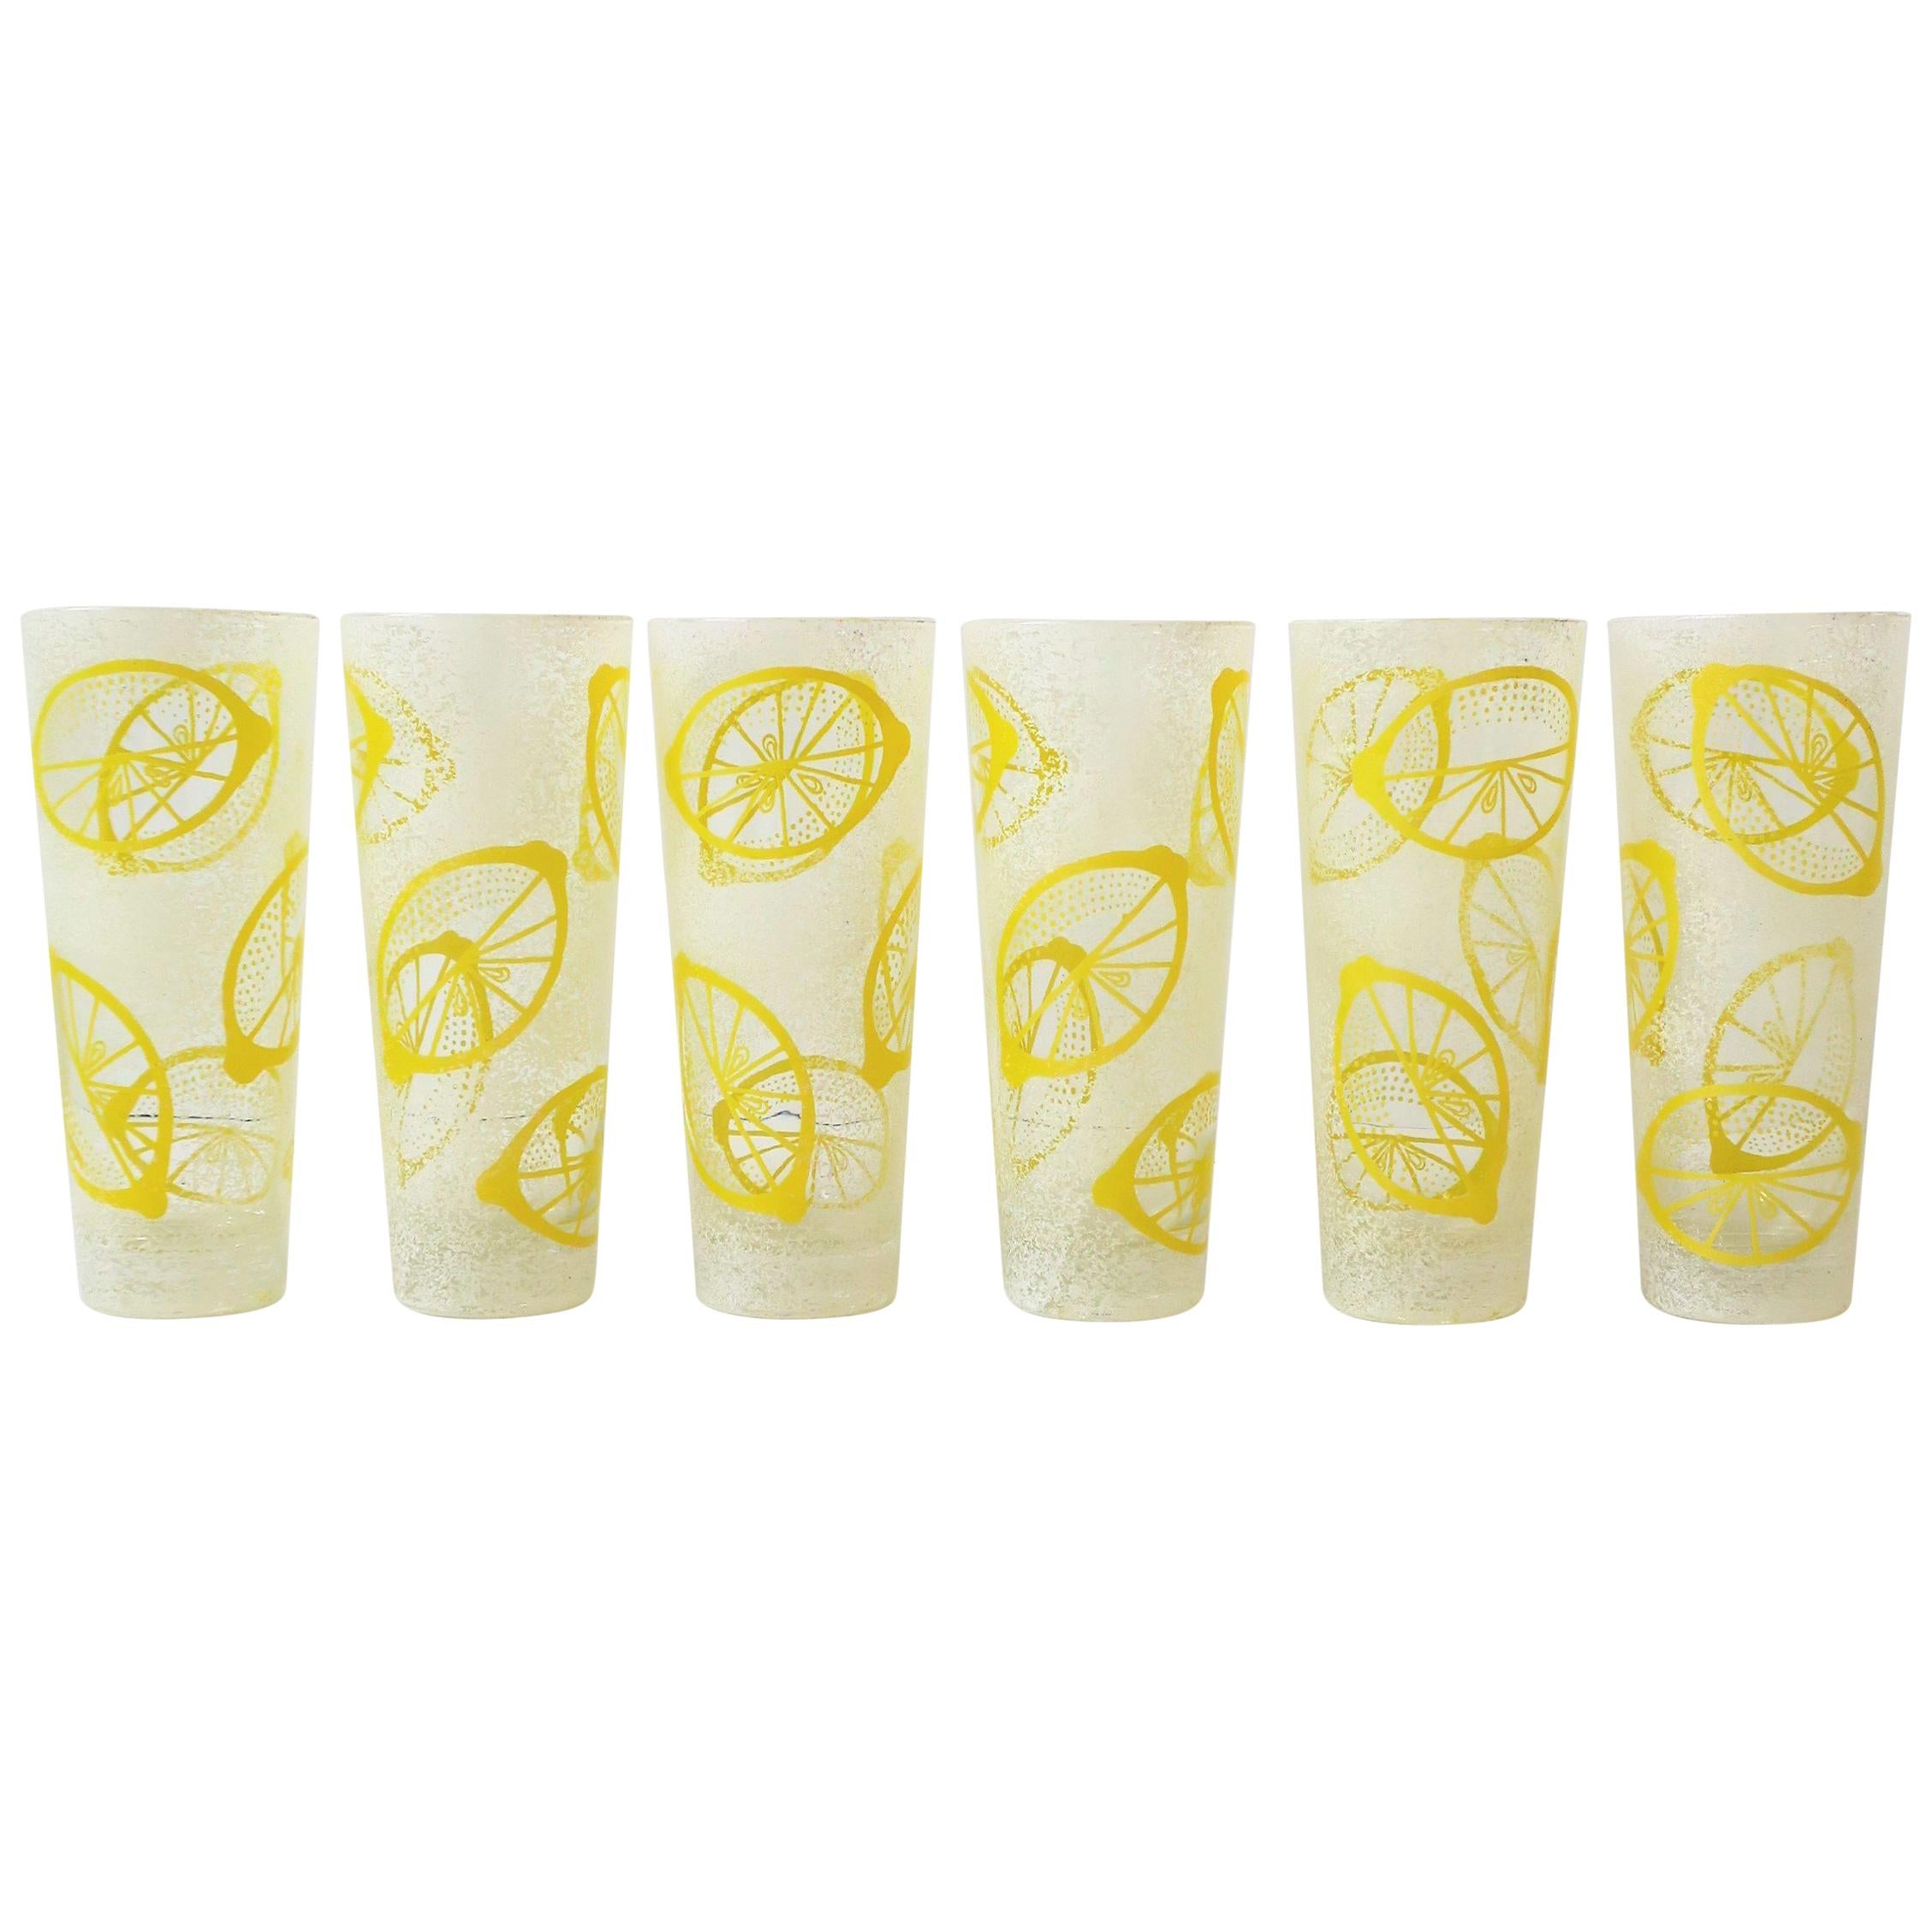 Lemon Fruit Highball Cocktail Rocks' Glasses Yellow and White Design, Set of 6